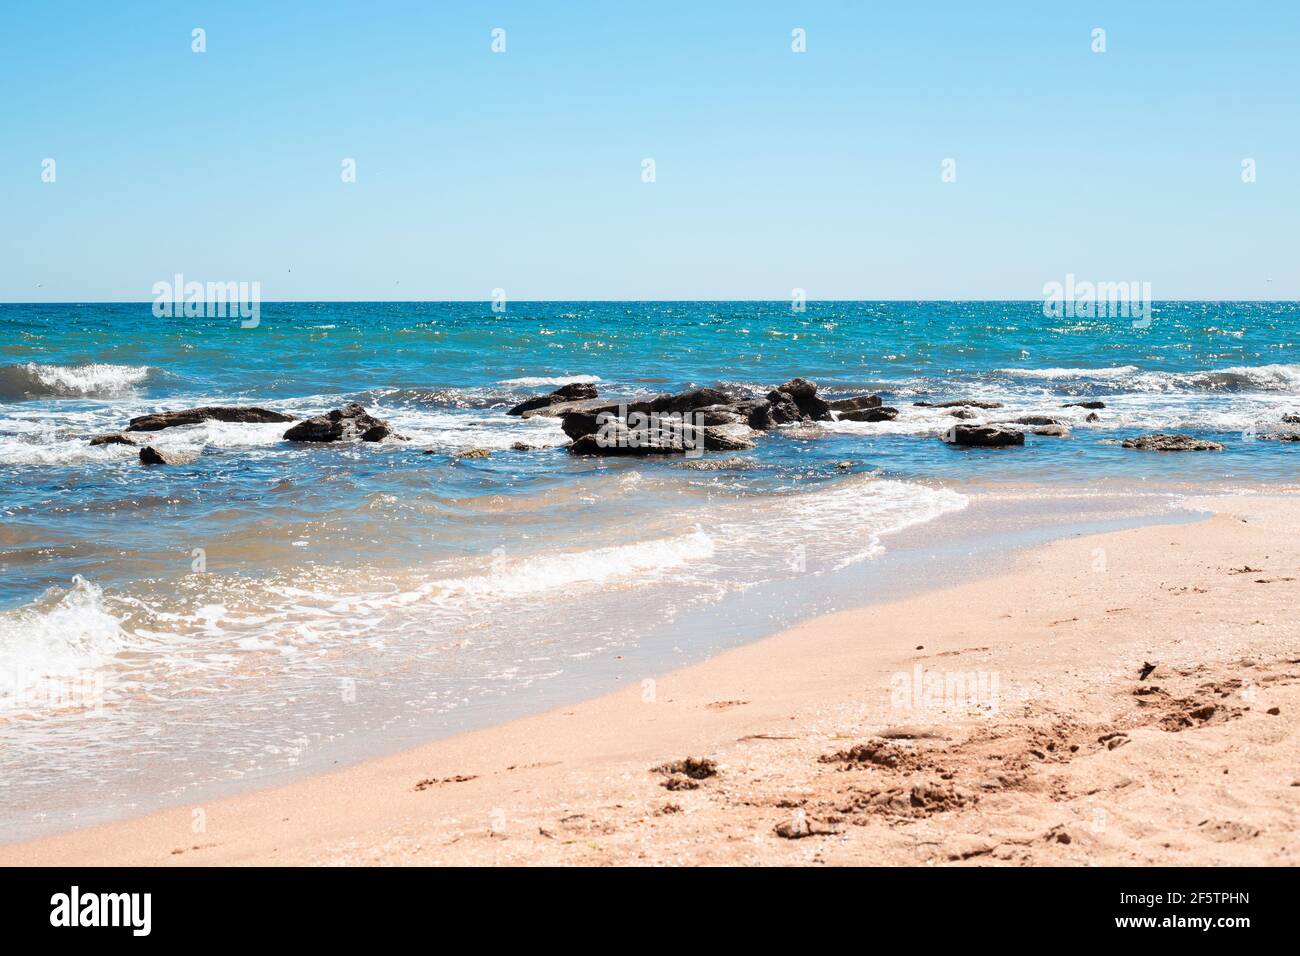 Meeresküste mit blauem Wasser gegen Steine und einem Sandstrand. Meer sonnige Sommerlandschaft. Stockfoto